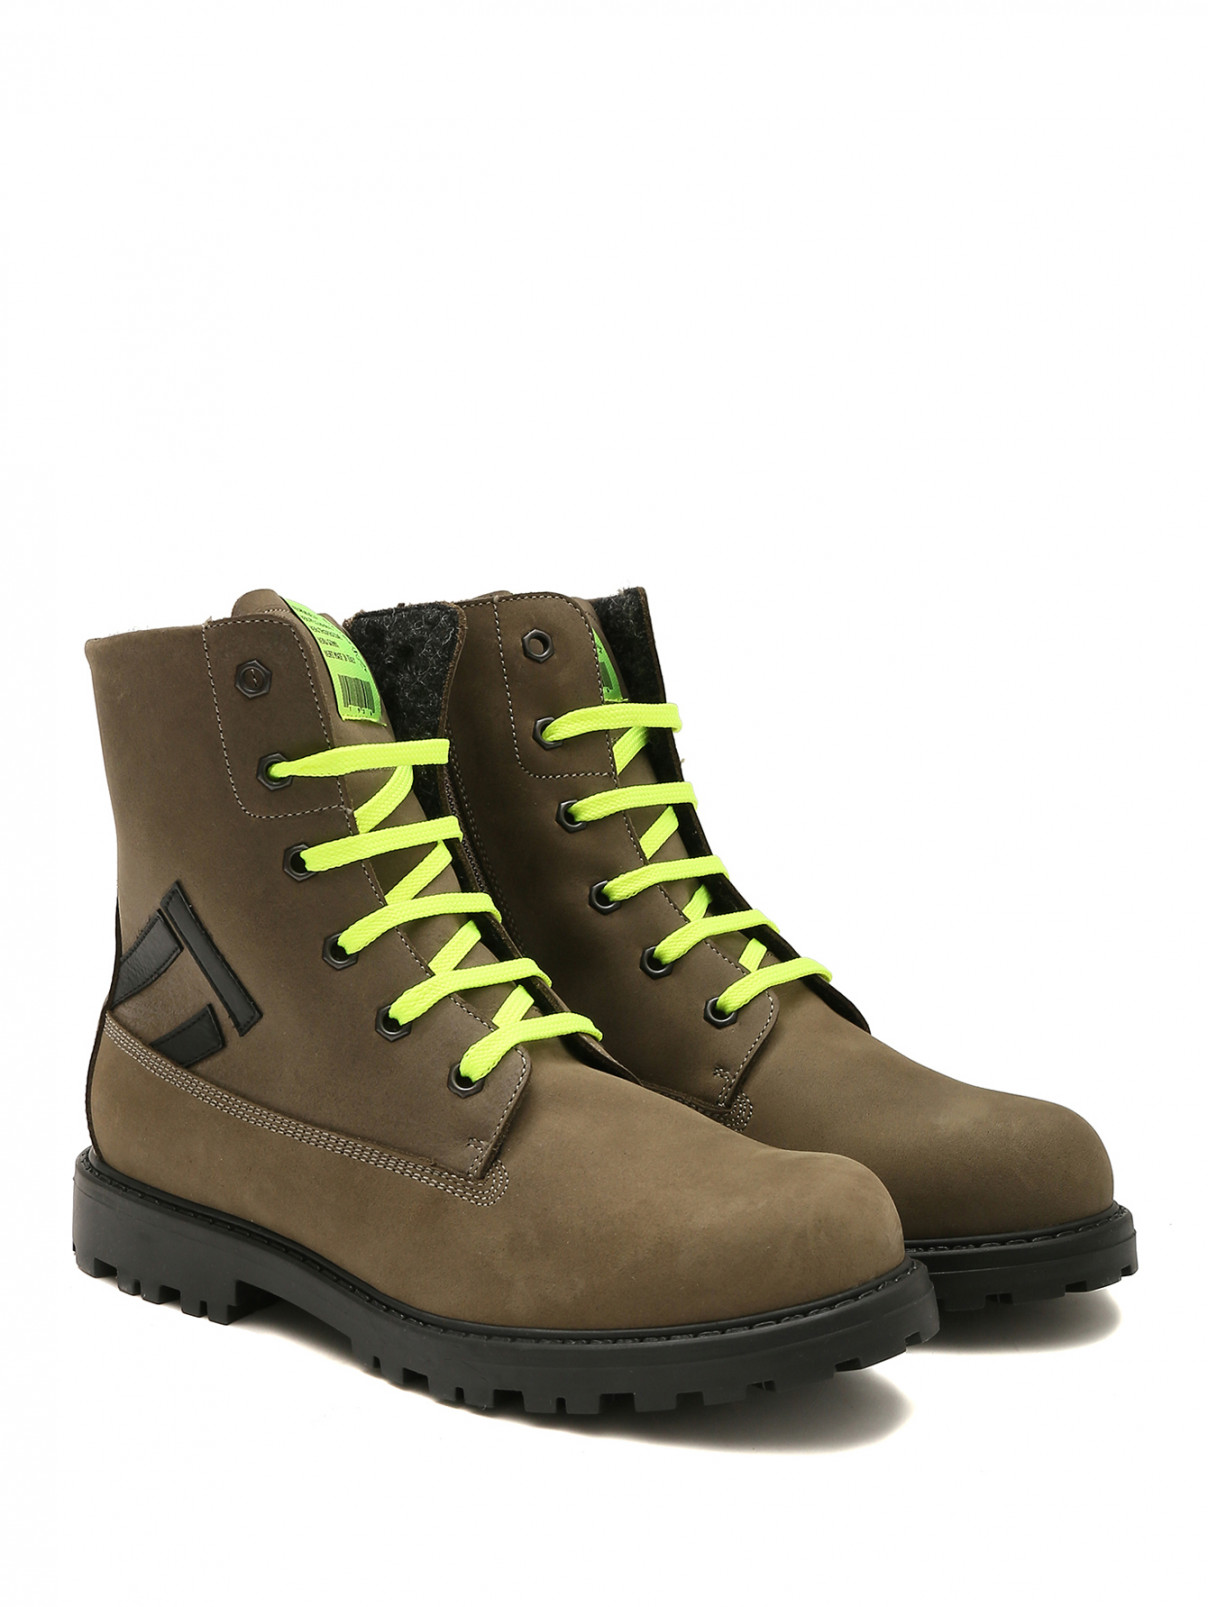 Замшевые ботинки с акцентными шнурками Rondinella  –  Общий вид  – Цвет:  Зеленый